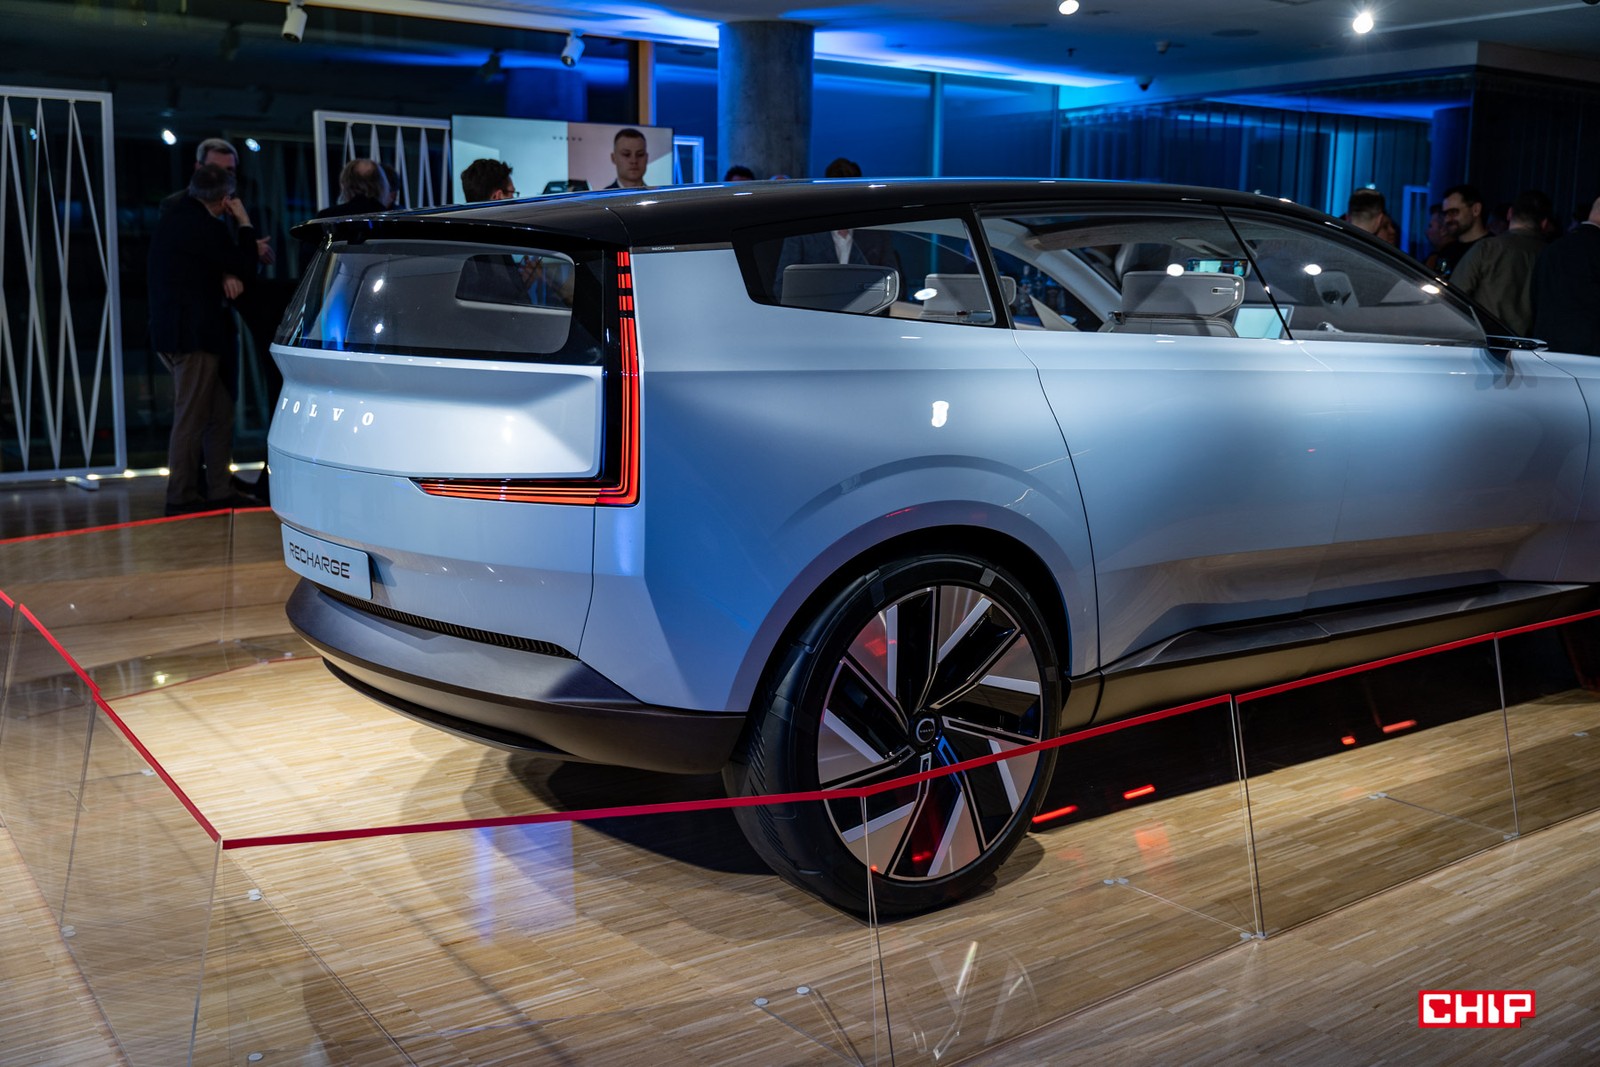 W 2030 roku wszystkie Volvo będą elektryczne. Kraków ma być stolicą ich rozwoju